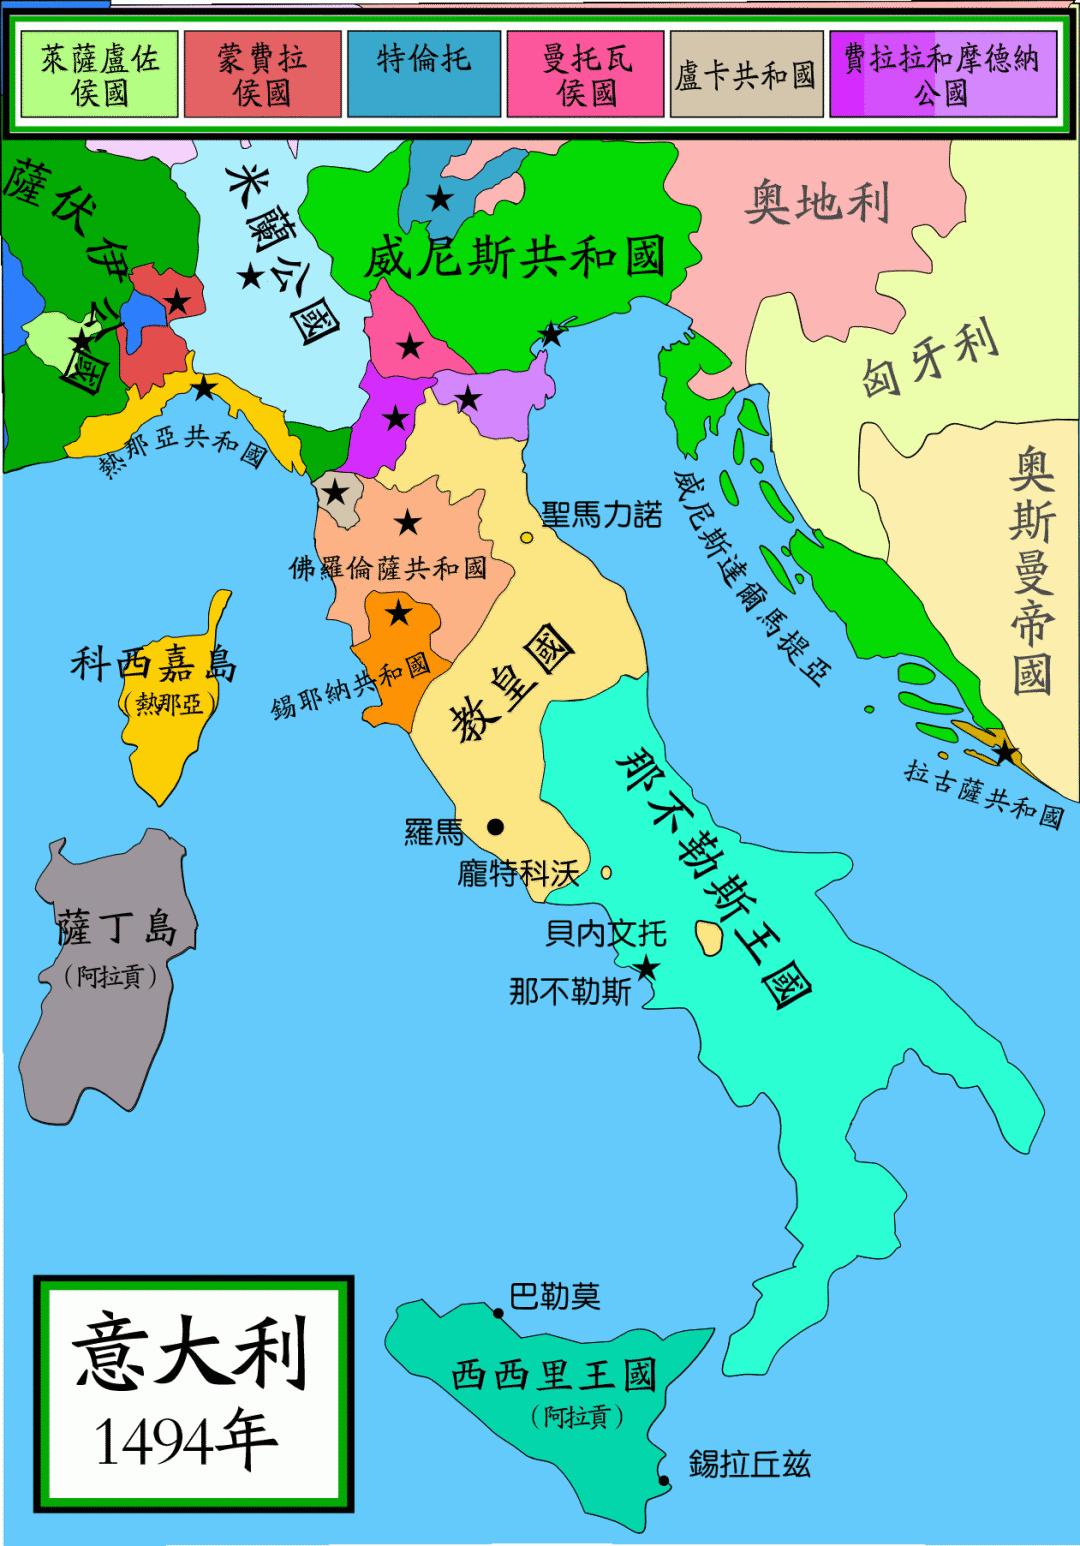 1494年的意大利法国大革命时期,法国同奥地利等干涉国家为了争夺